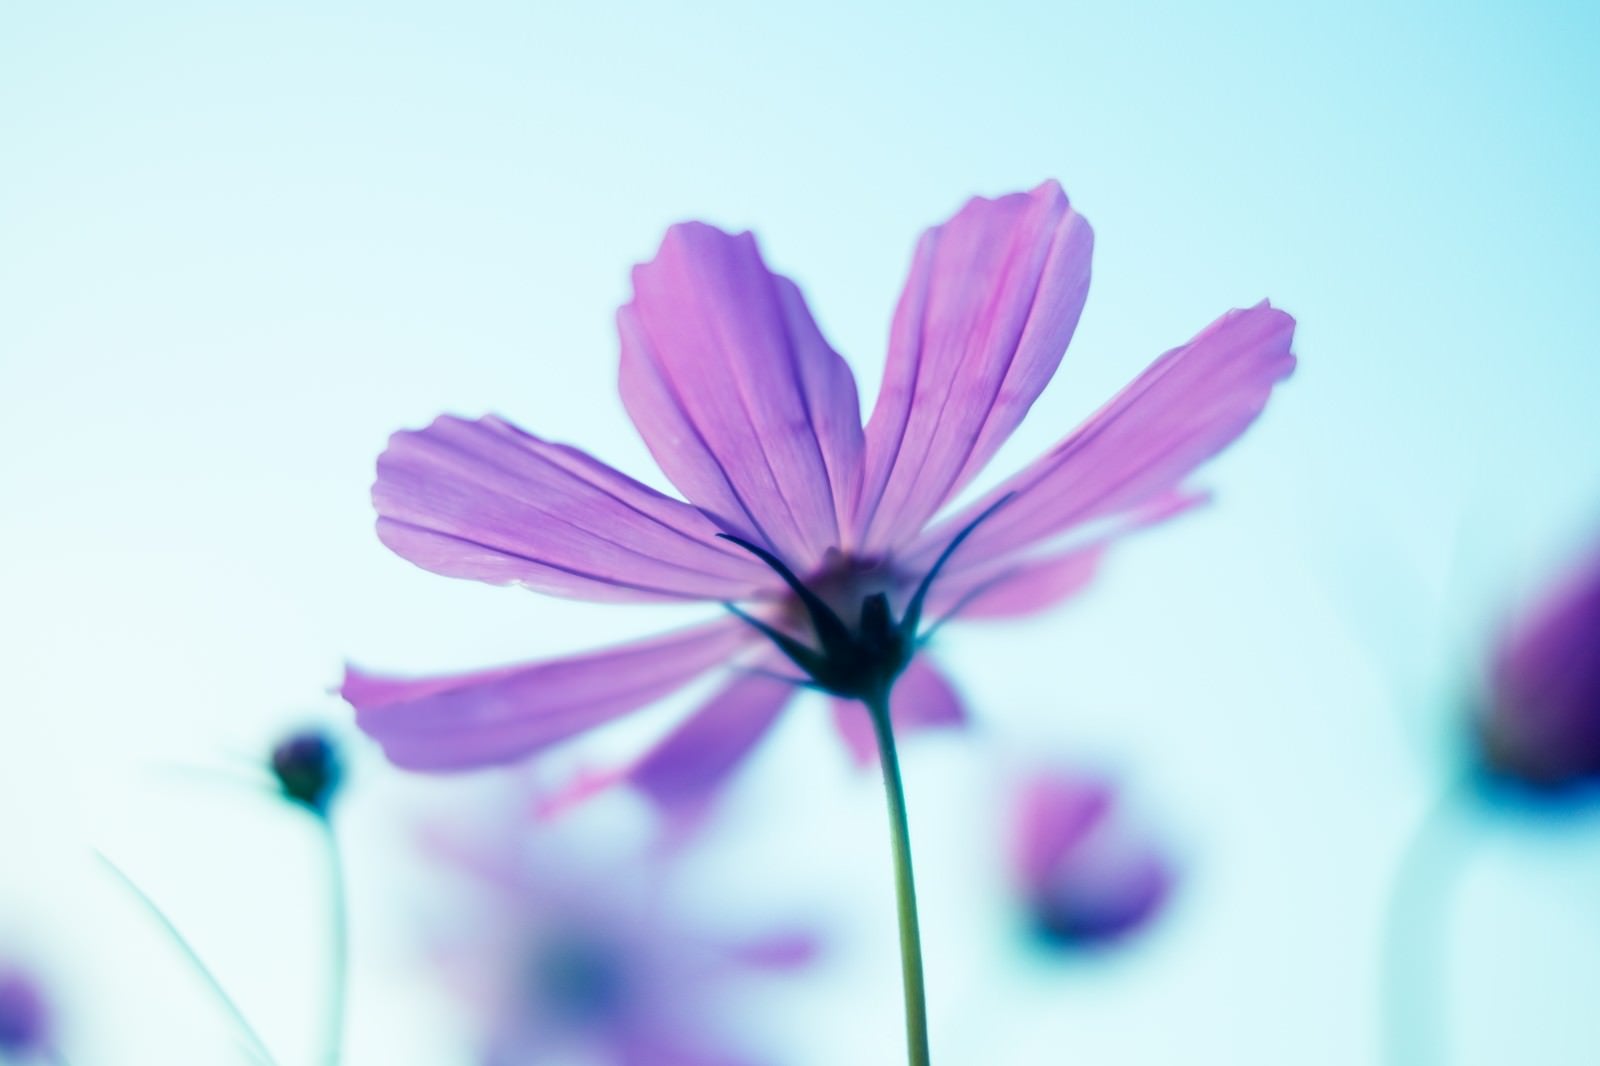 「コスモスの花と空」の写真